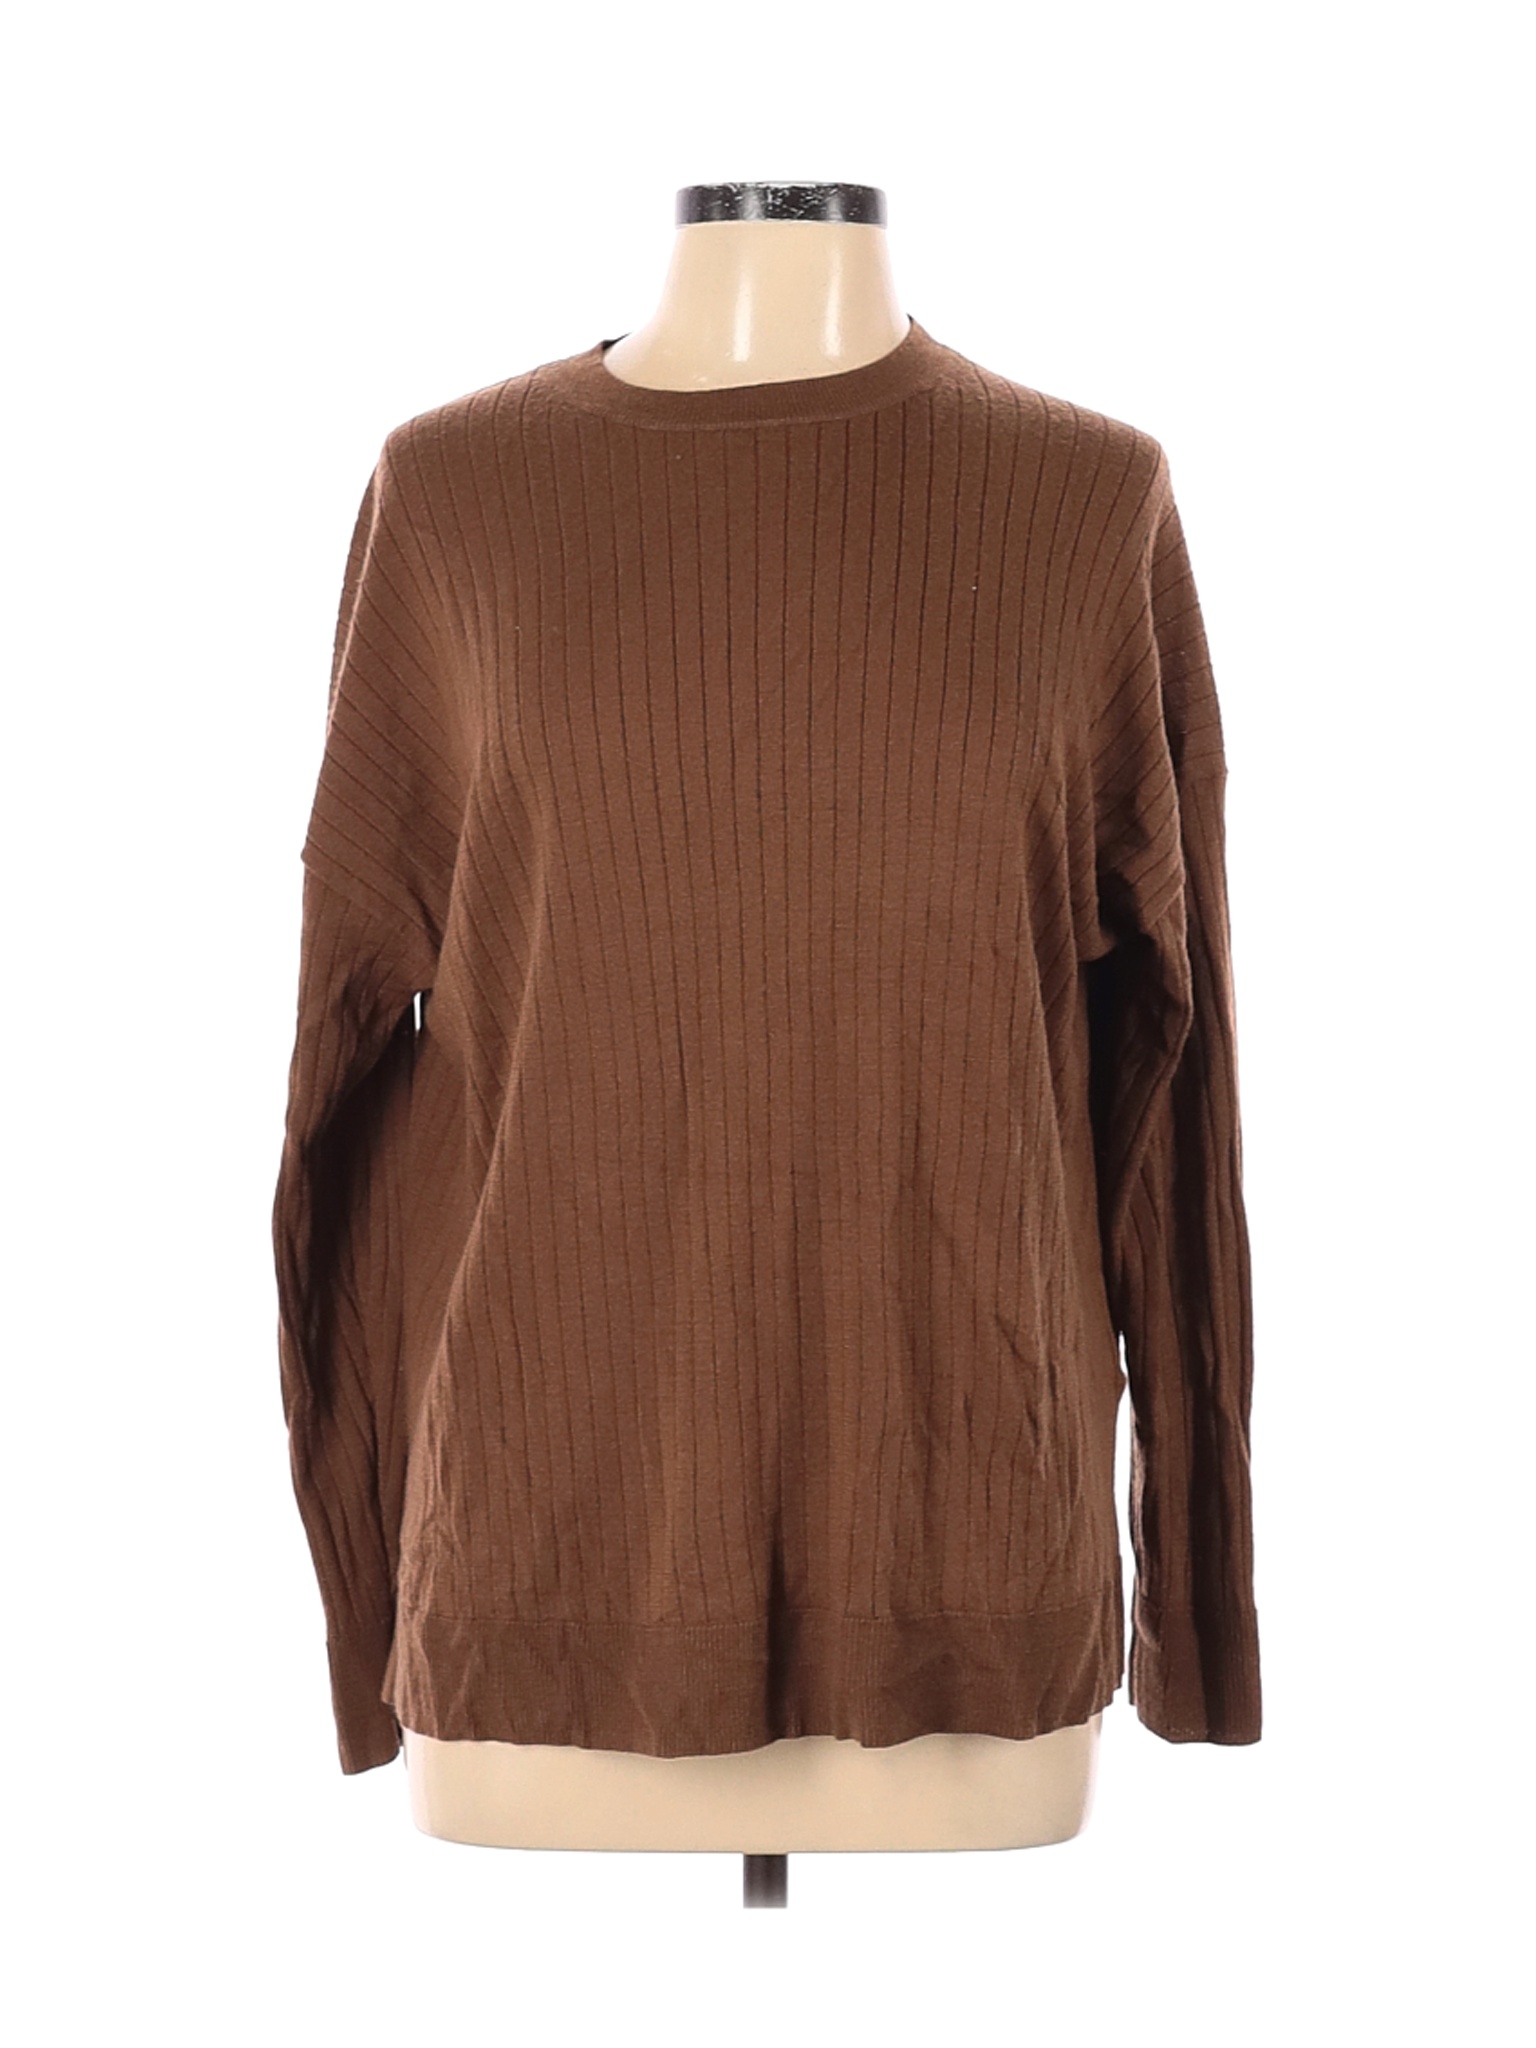 Uniqlo Women Brown Pullover Sweater L | eBay